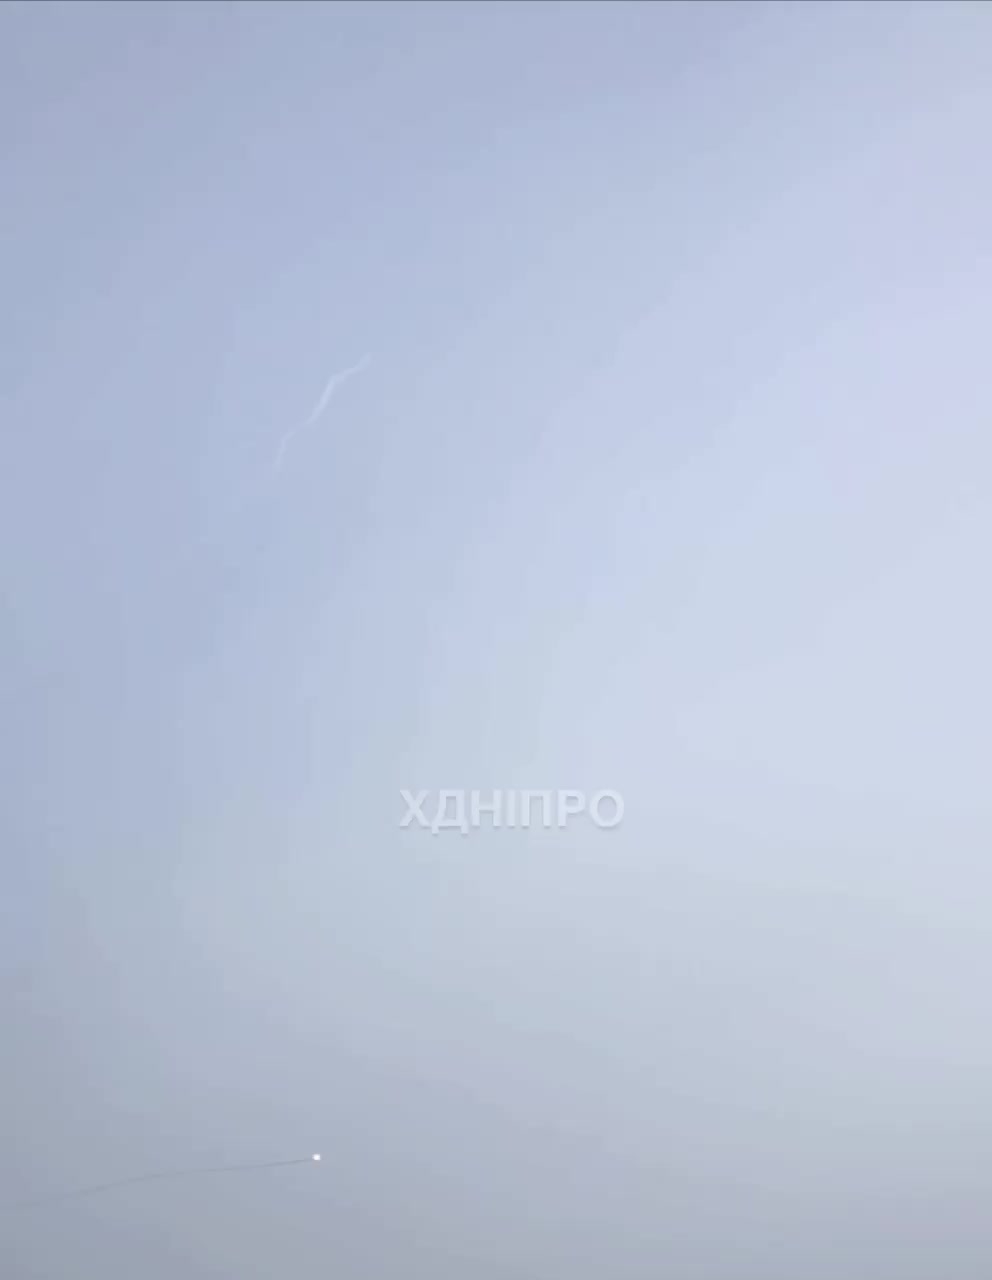 La defensa aérea derribó un misil sobre la ciudad de Dnipro